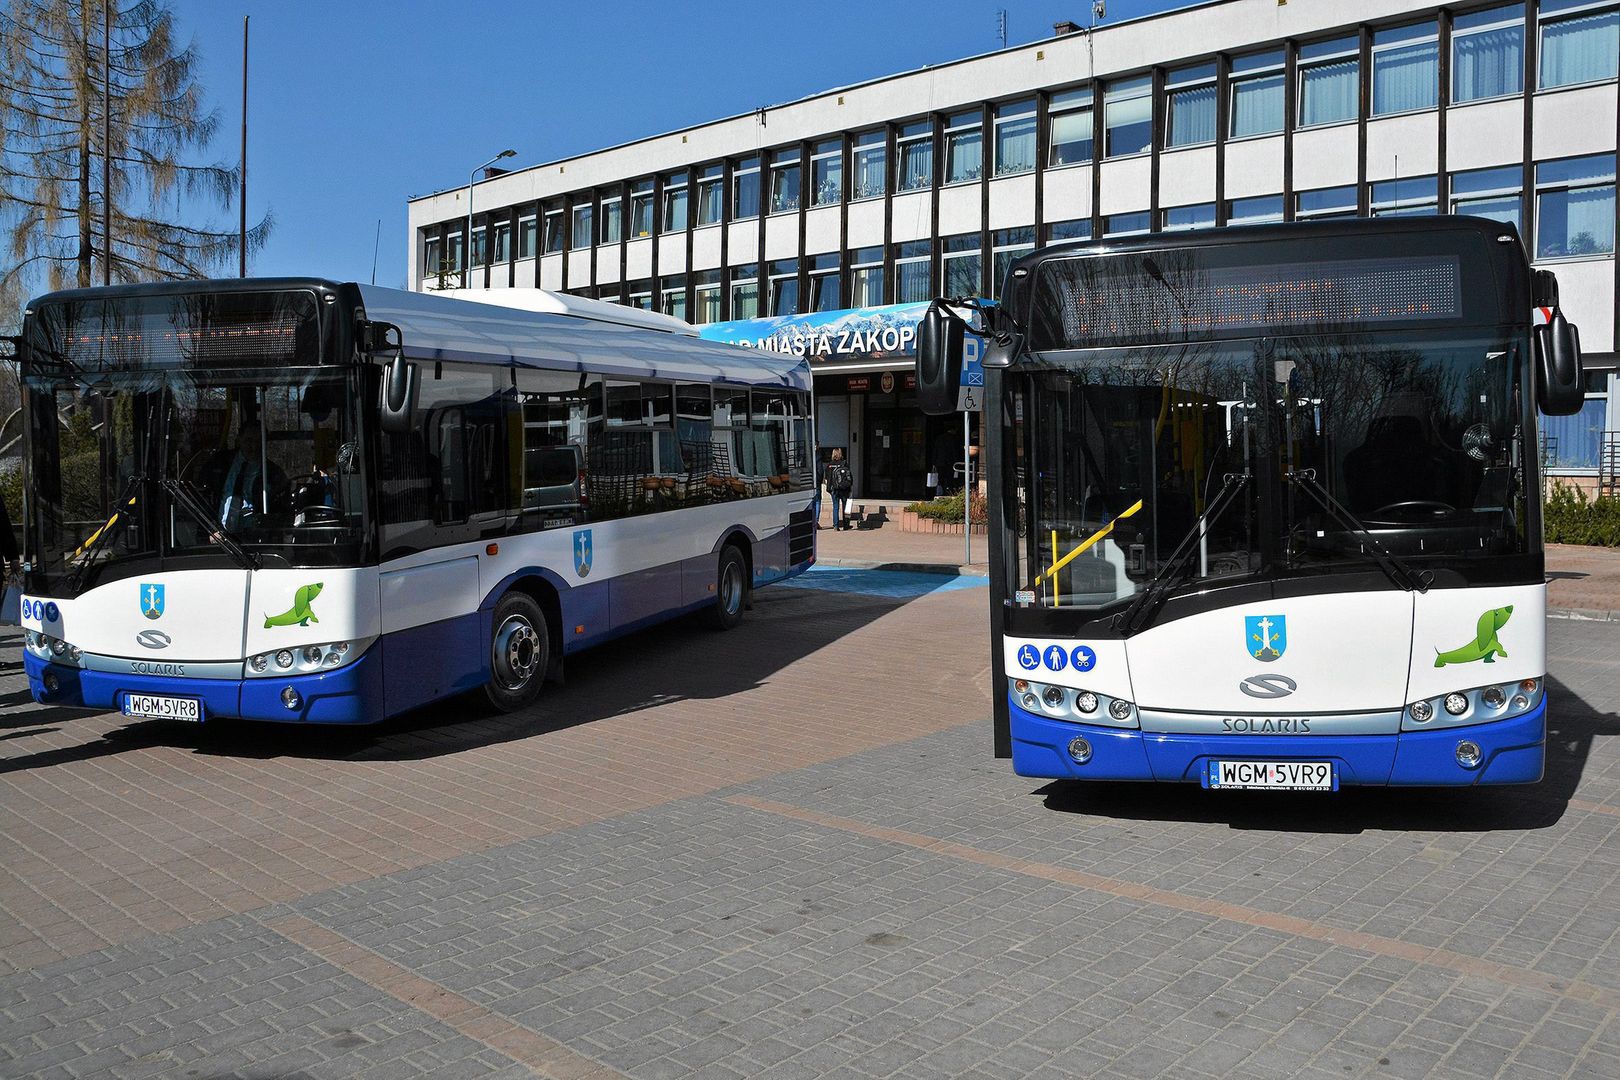 Wyrzucili obcokrajowca z autobusu w Zakopanem. Interwencja burmistrza